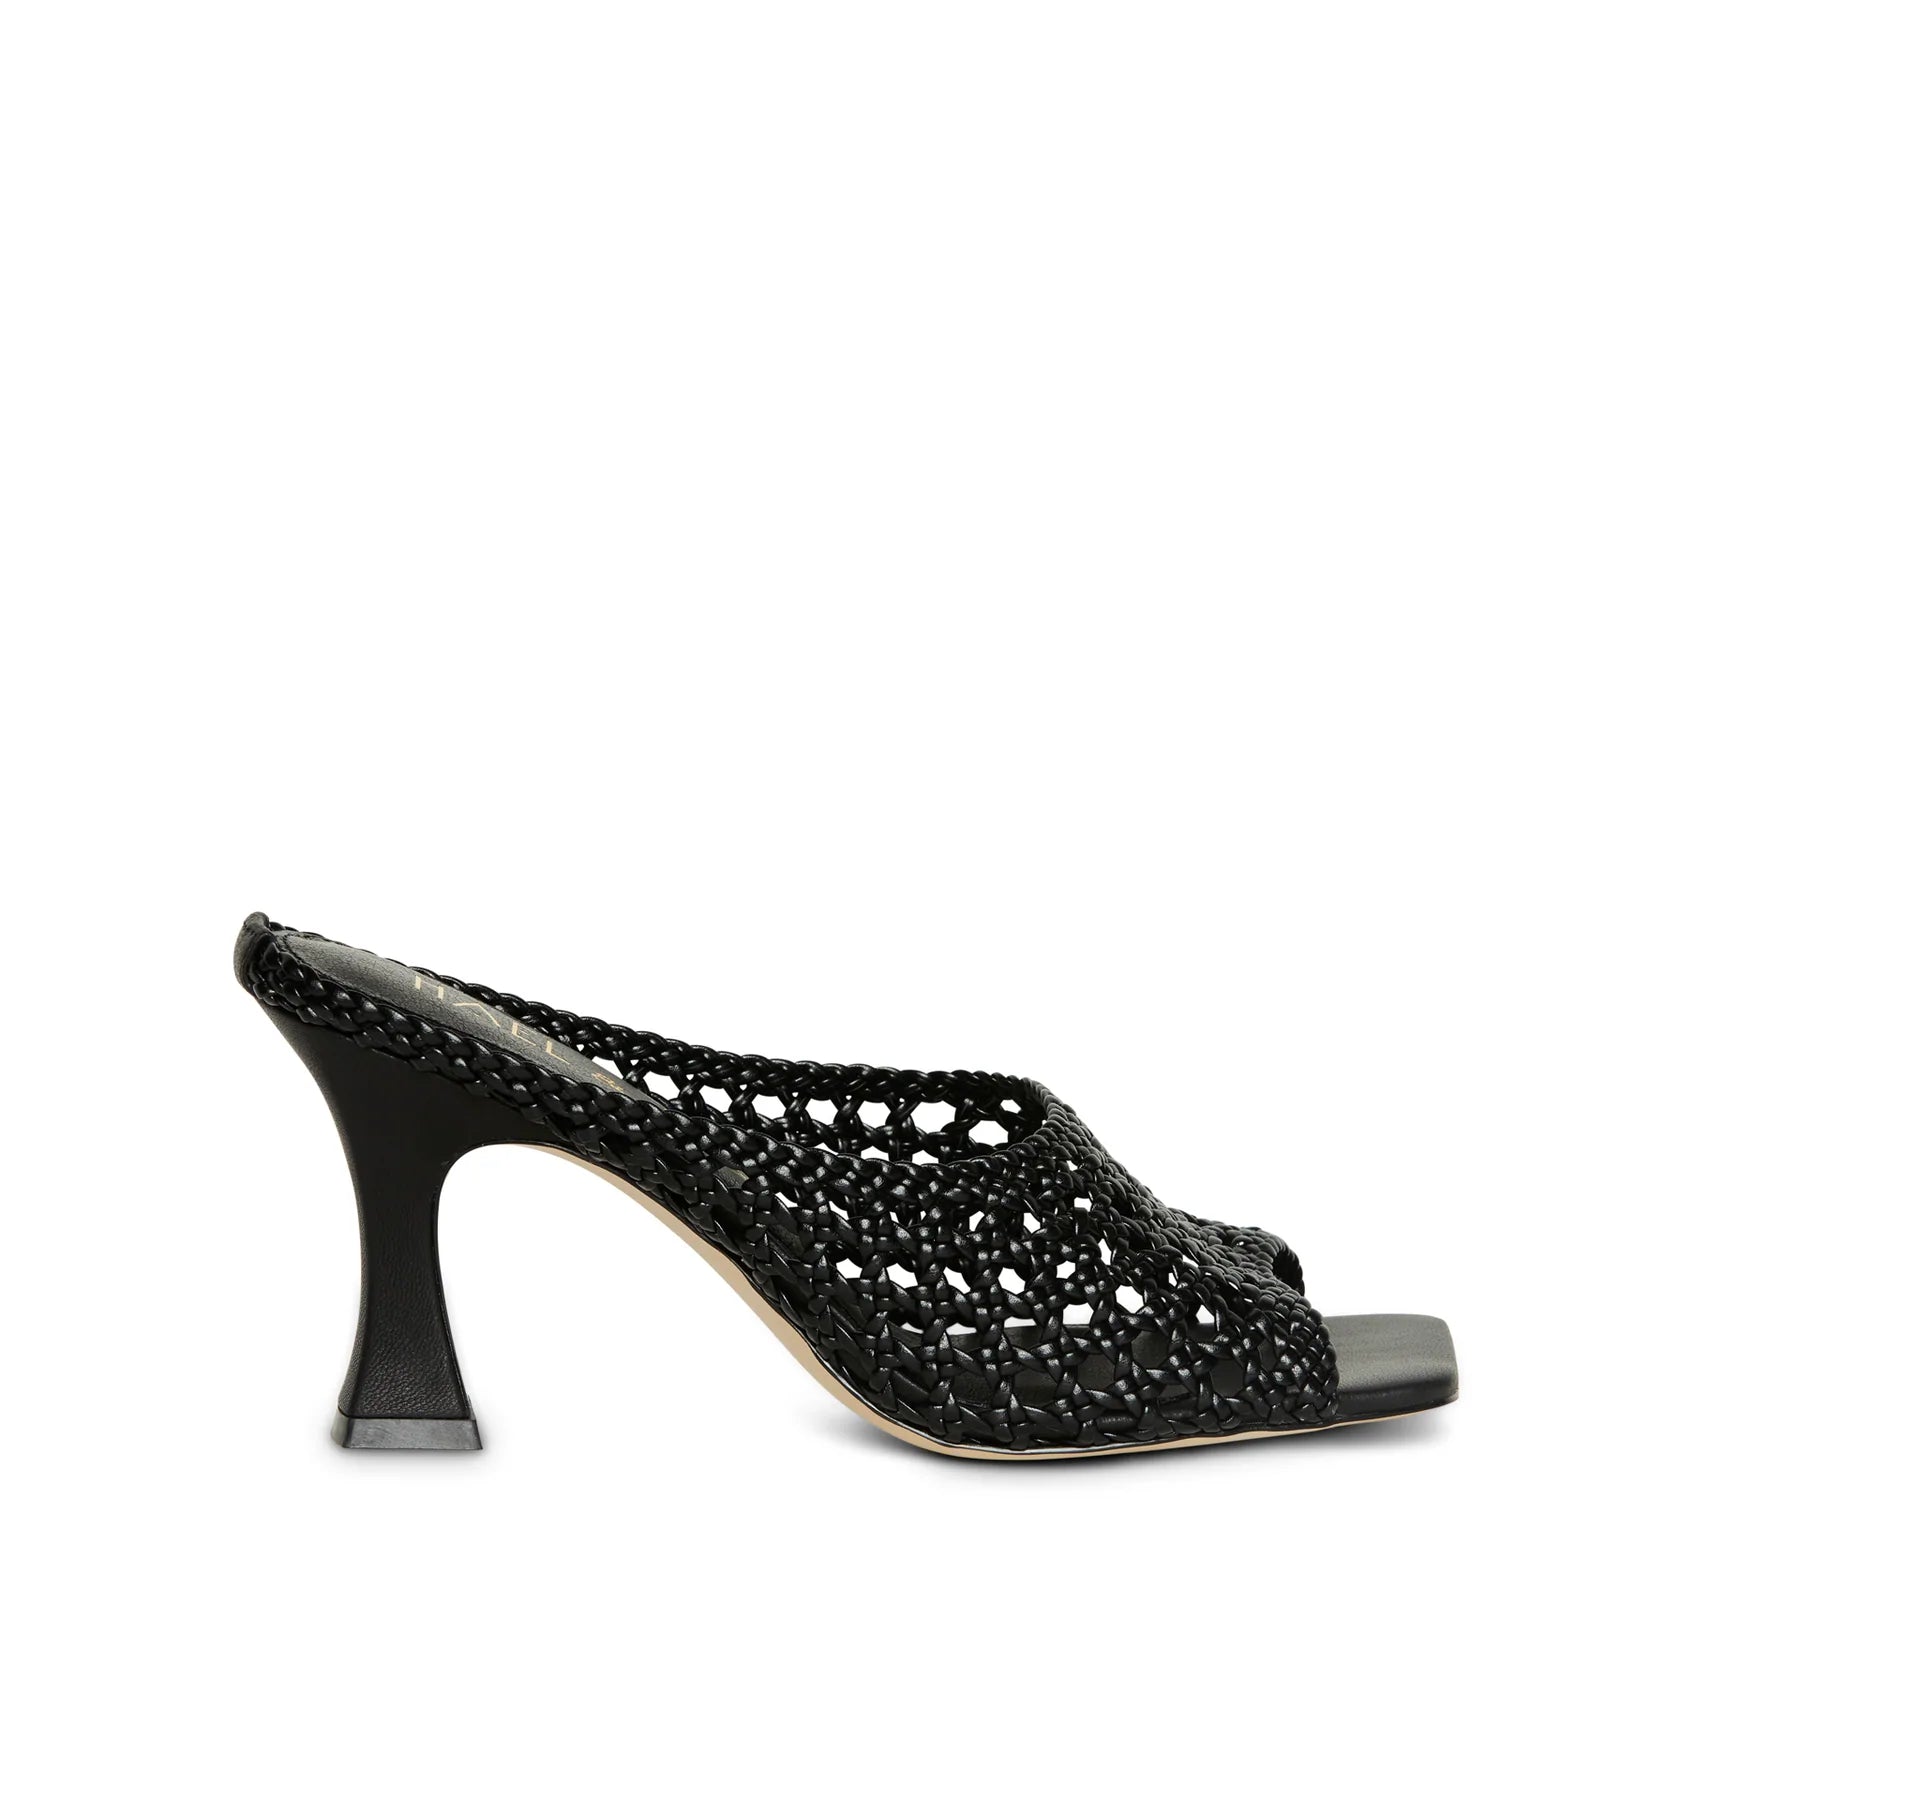 Hael & Jax - Gracie leather heel - Black